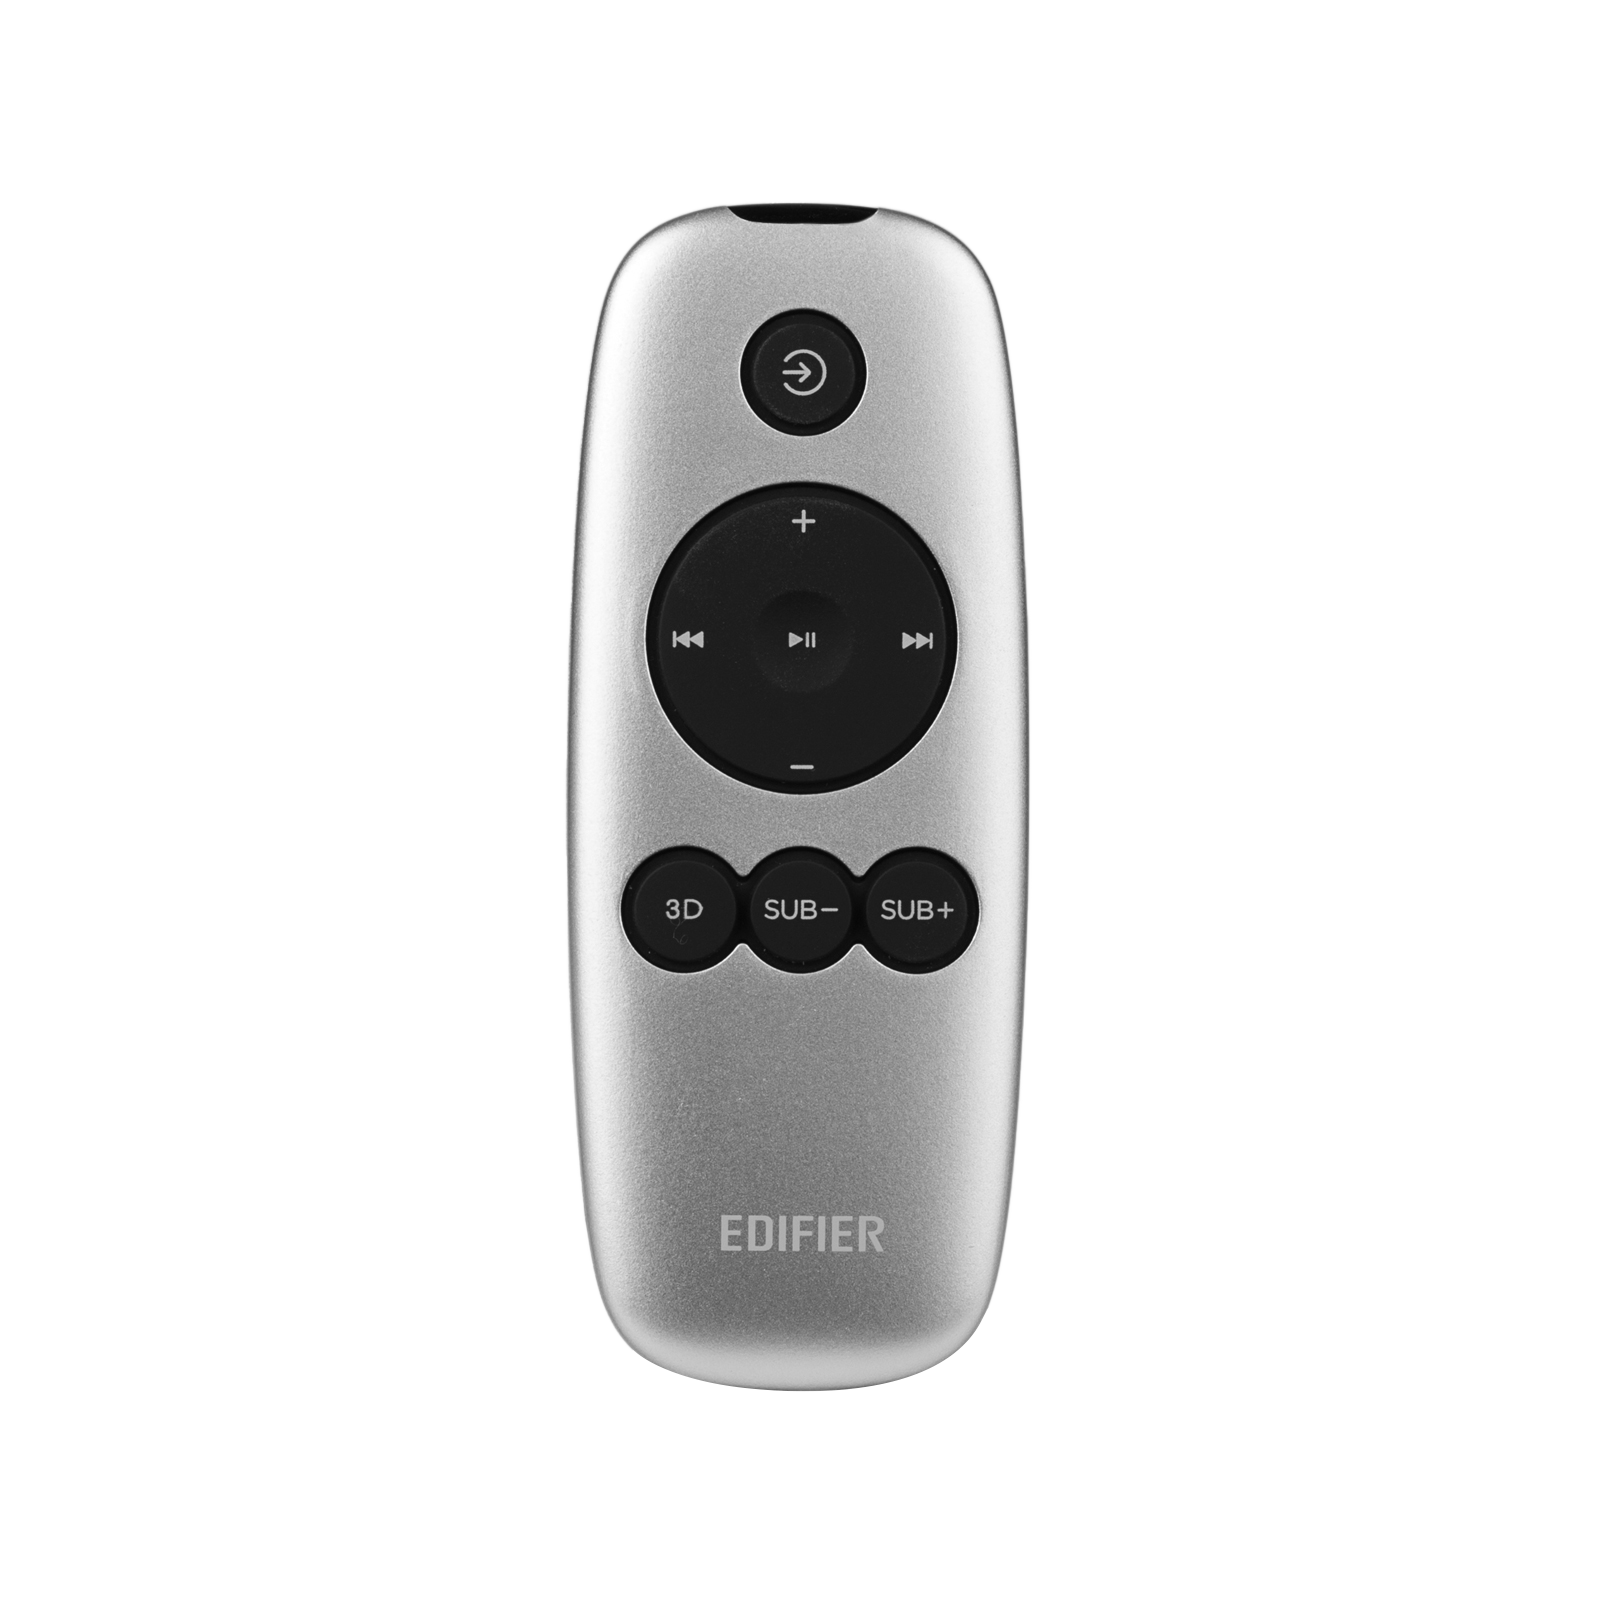 e235 Luna E Remote Control Fit for Edifier e235 Luna E speakers